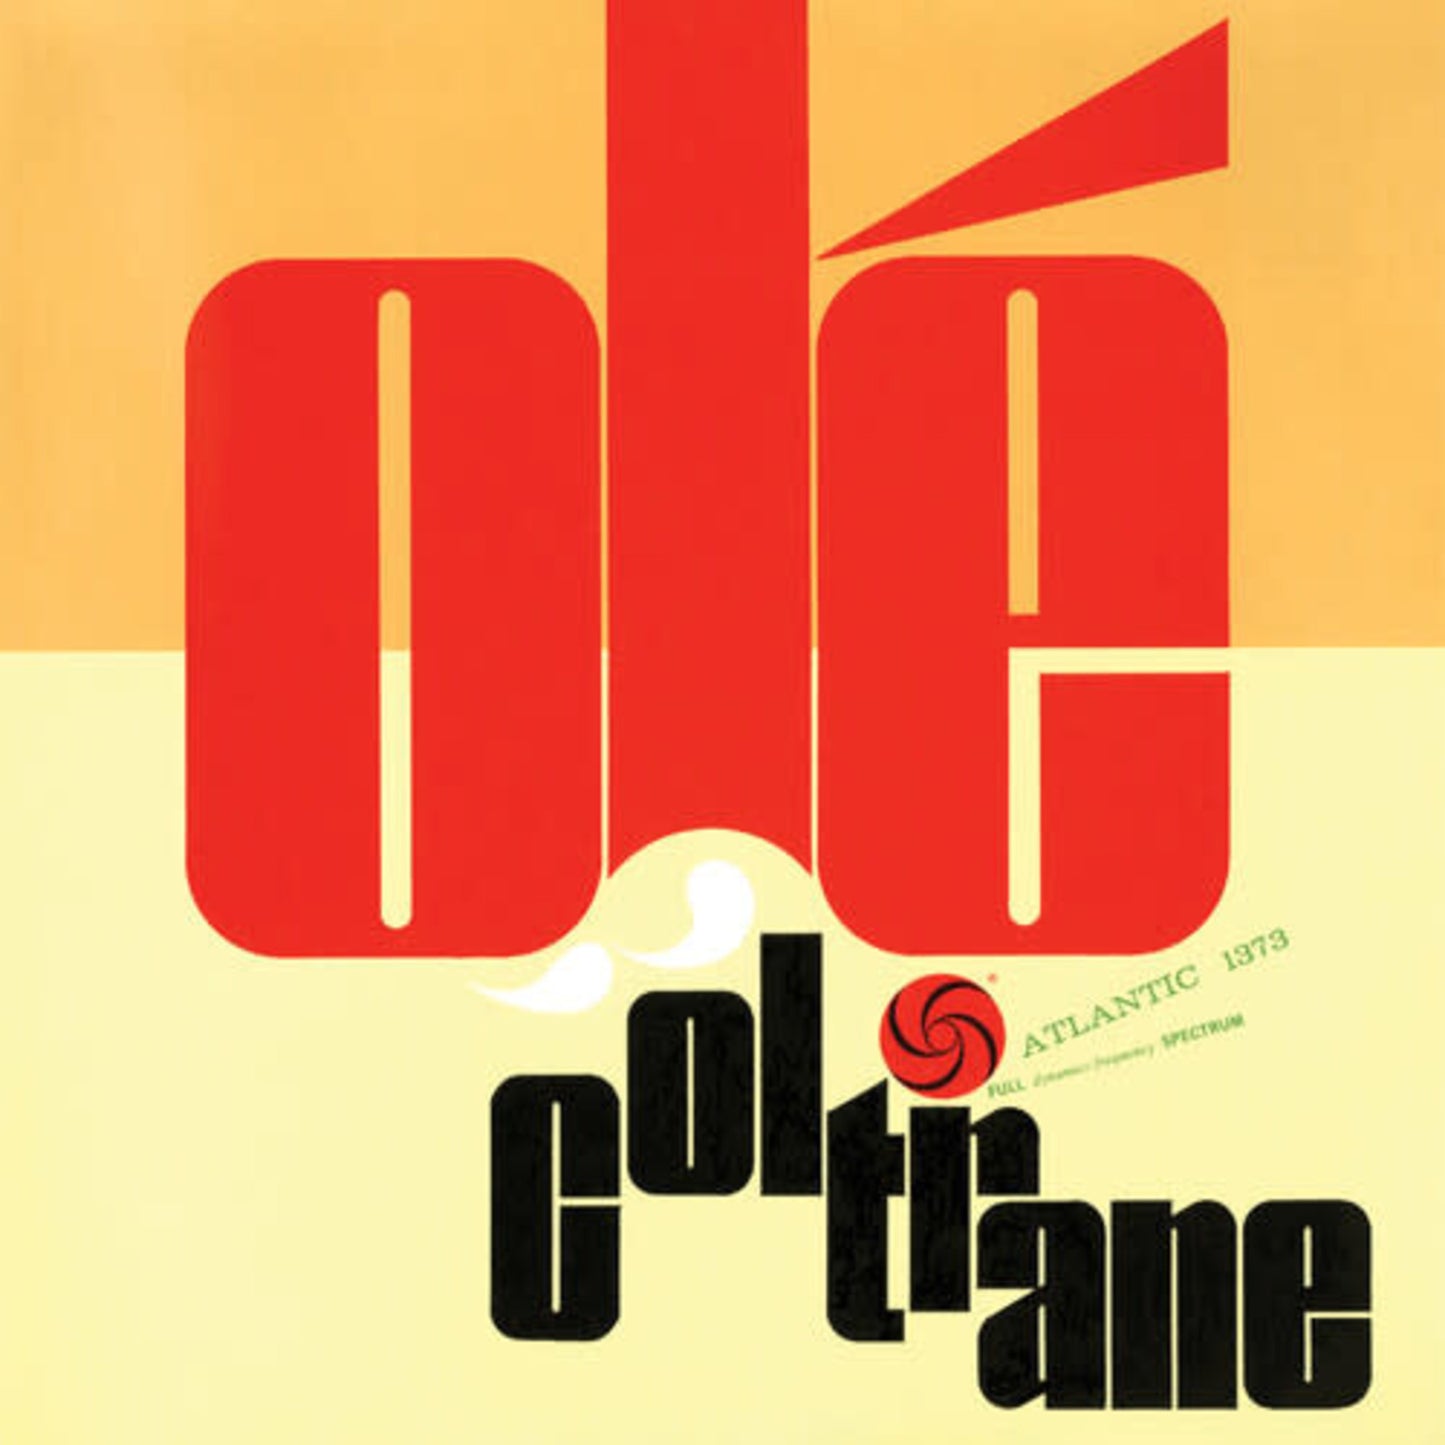 John Coltrane - Olé Coltrane LP